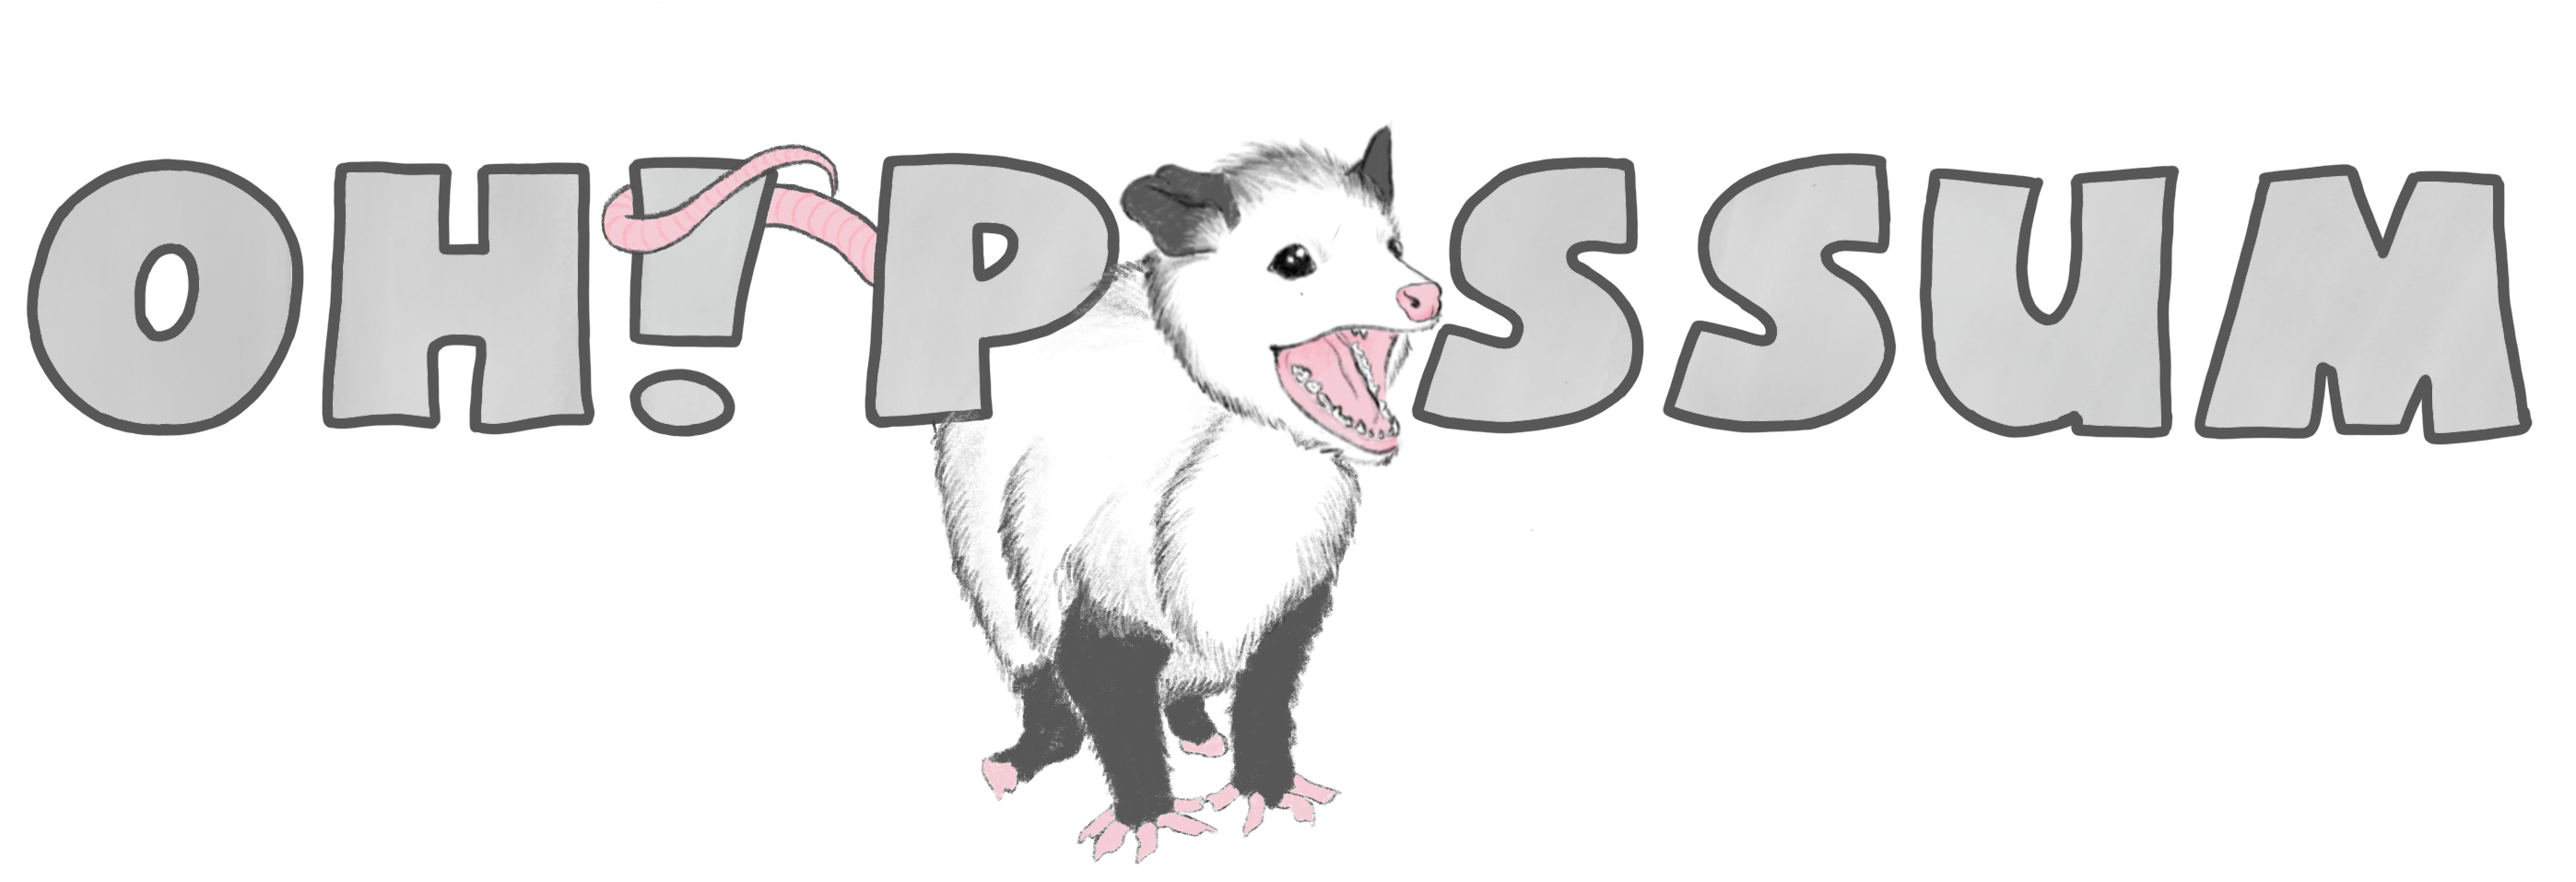 A Cartoon Of A Possum